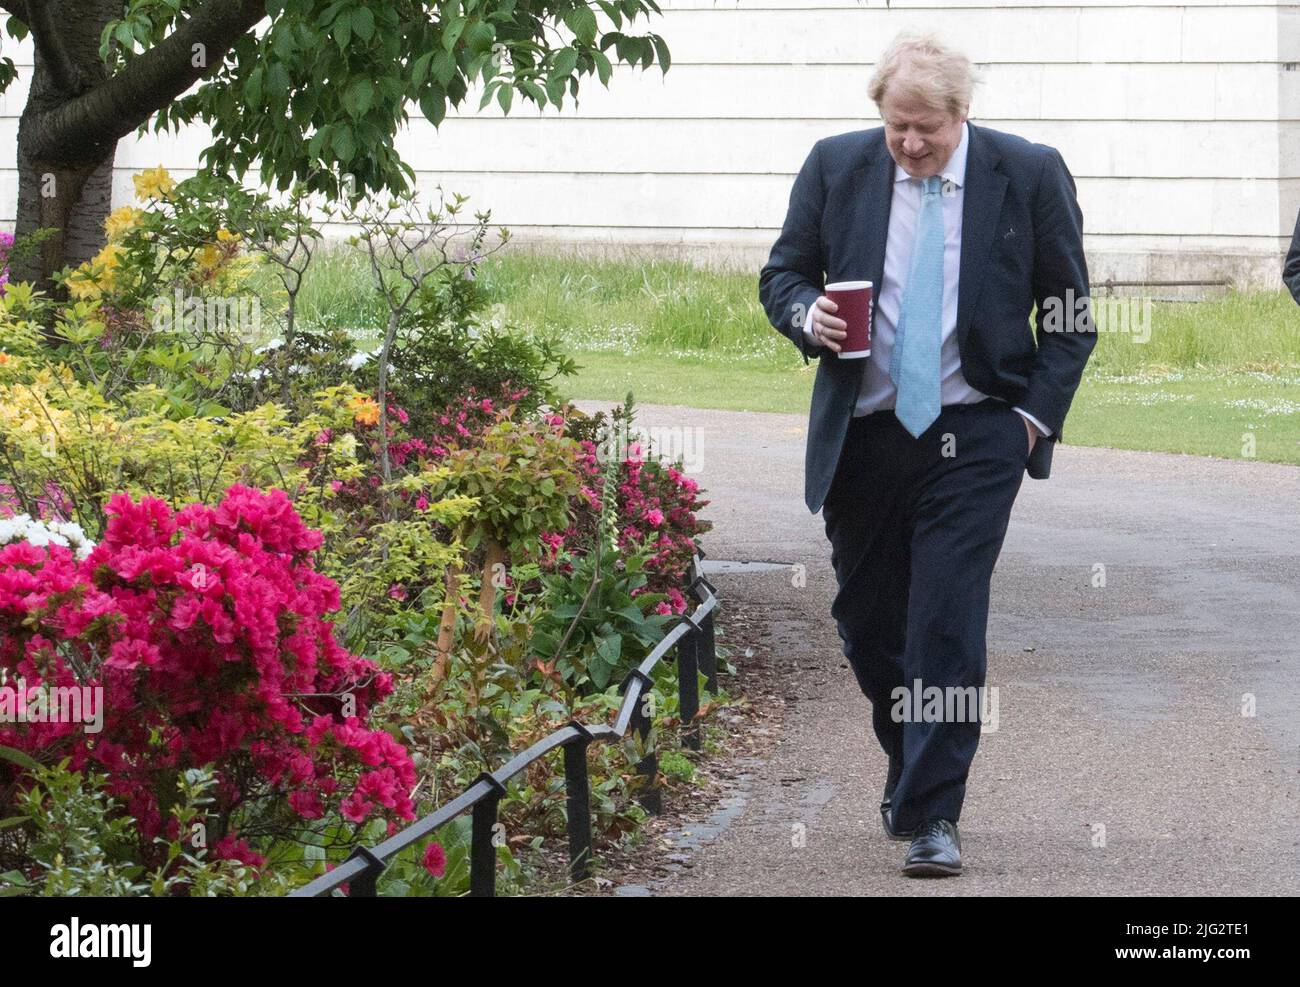 Aktenfoto vom 05/05/20 von Premierminister Boris Johnson macht einen Morgenspaziergang im St. James' Park in London, bevor er zur Downing Street zurückkehrt, als Großbritannien in eine siebte Woche der Sperre eingetreten ist. Boris Johnson wird seinen Rücktritt heute, wahrscheinlich vor Mittag, öffentlich bekannt geben, berichtet die BBC. Ausgabedatum: Donnerstag, 7. Juli 2022. Stockfoto